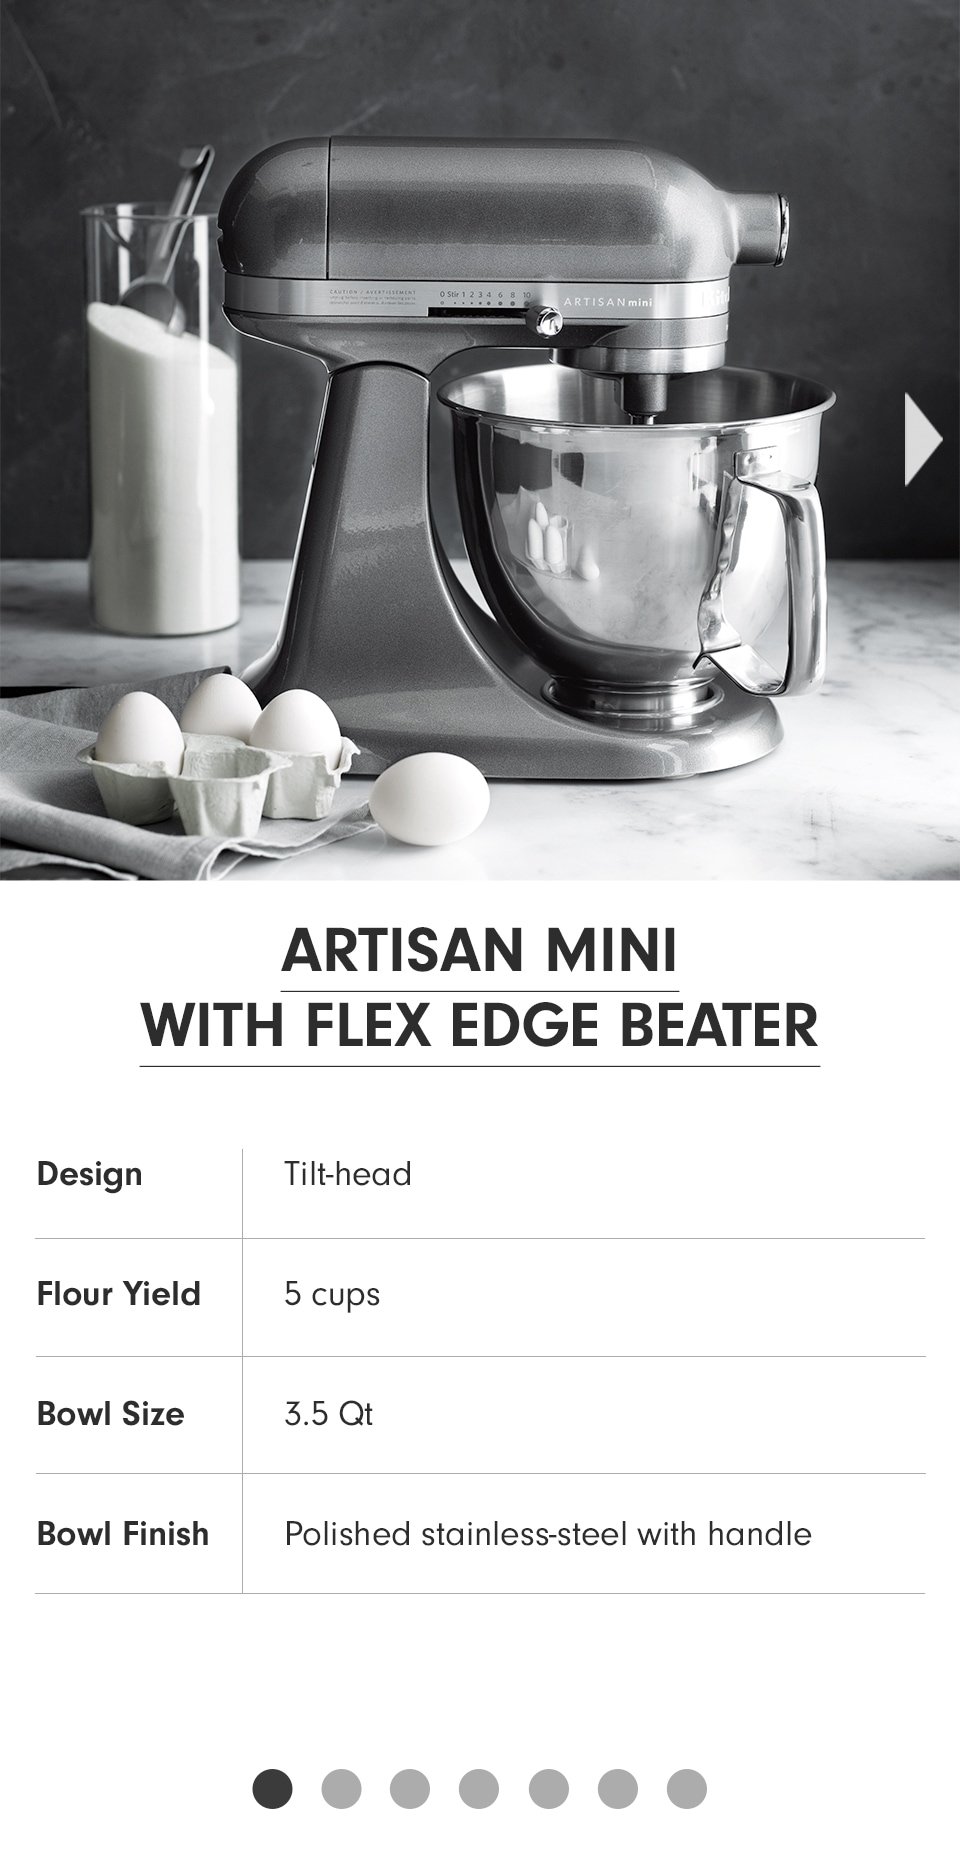 KitchenAid Mixer Comparison Guide